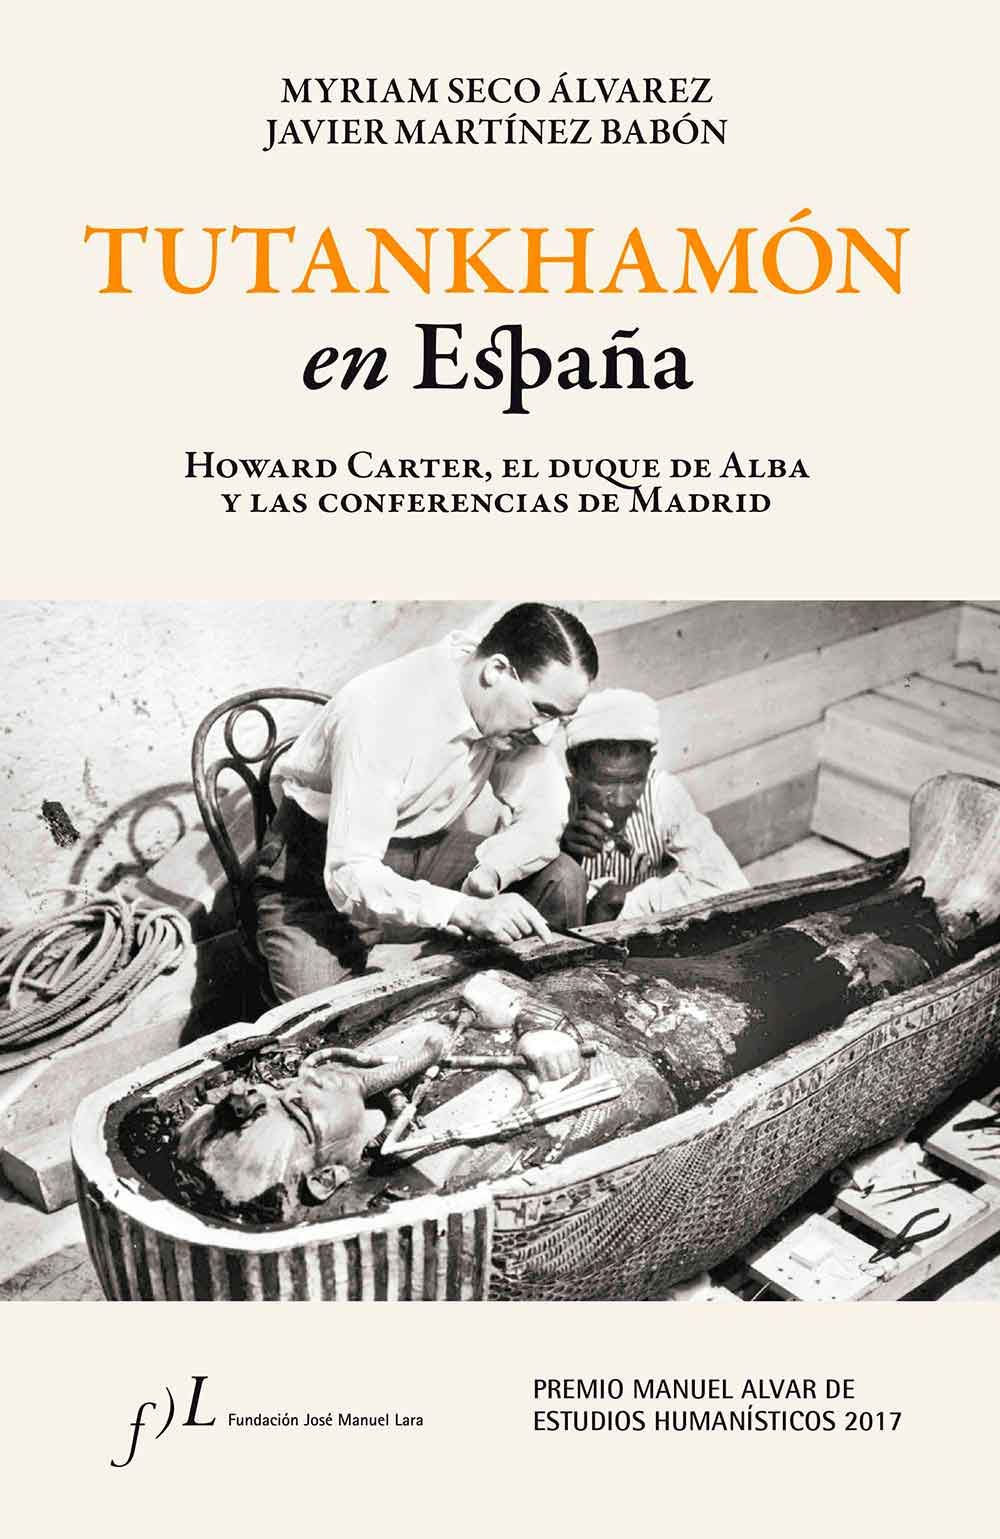 Portada del libro 'Tutankhamon en España', Premio Manuel Alvar 2017